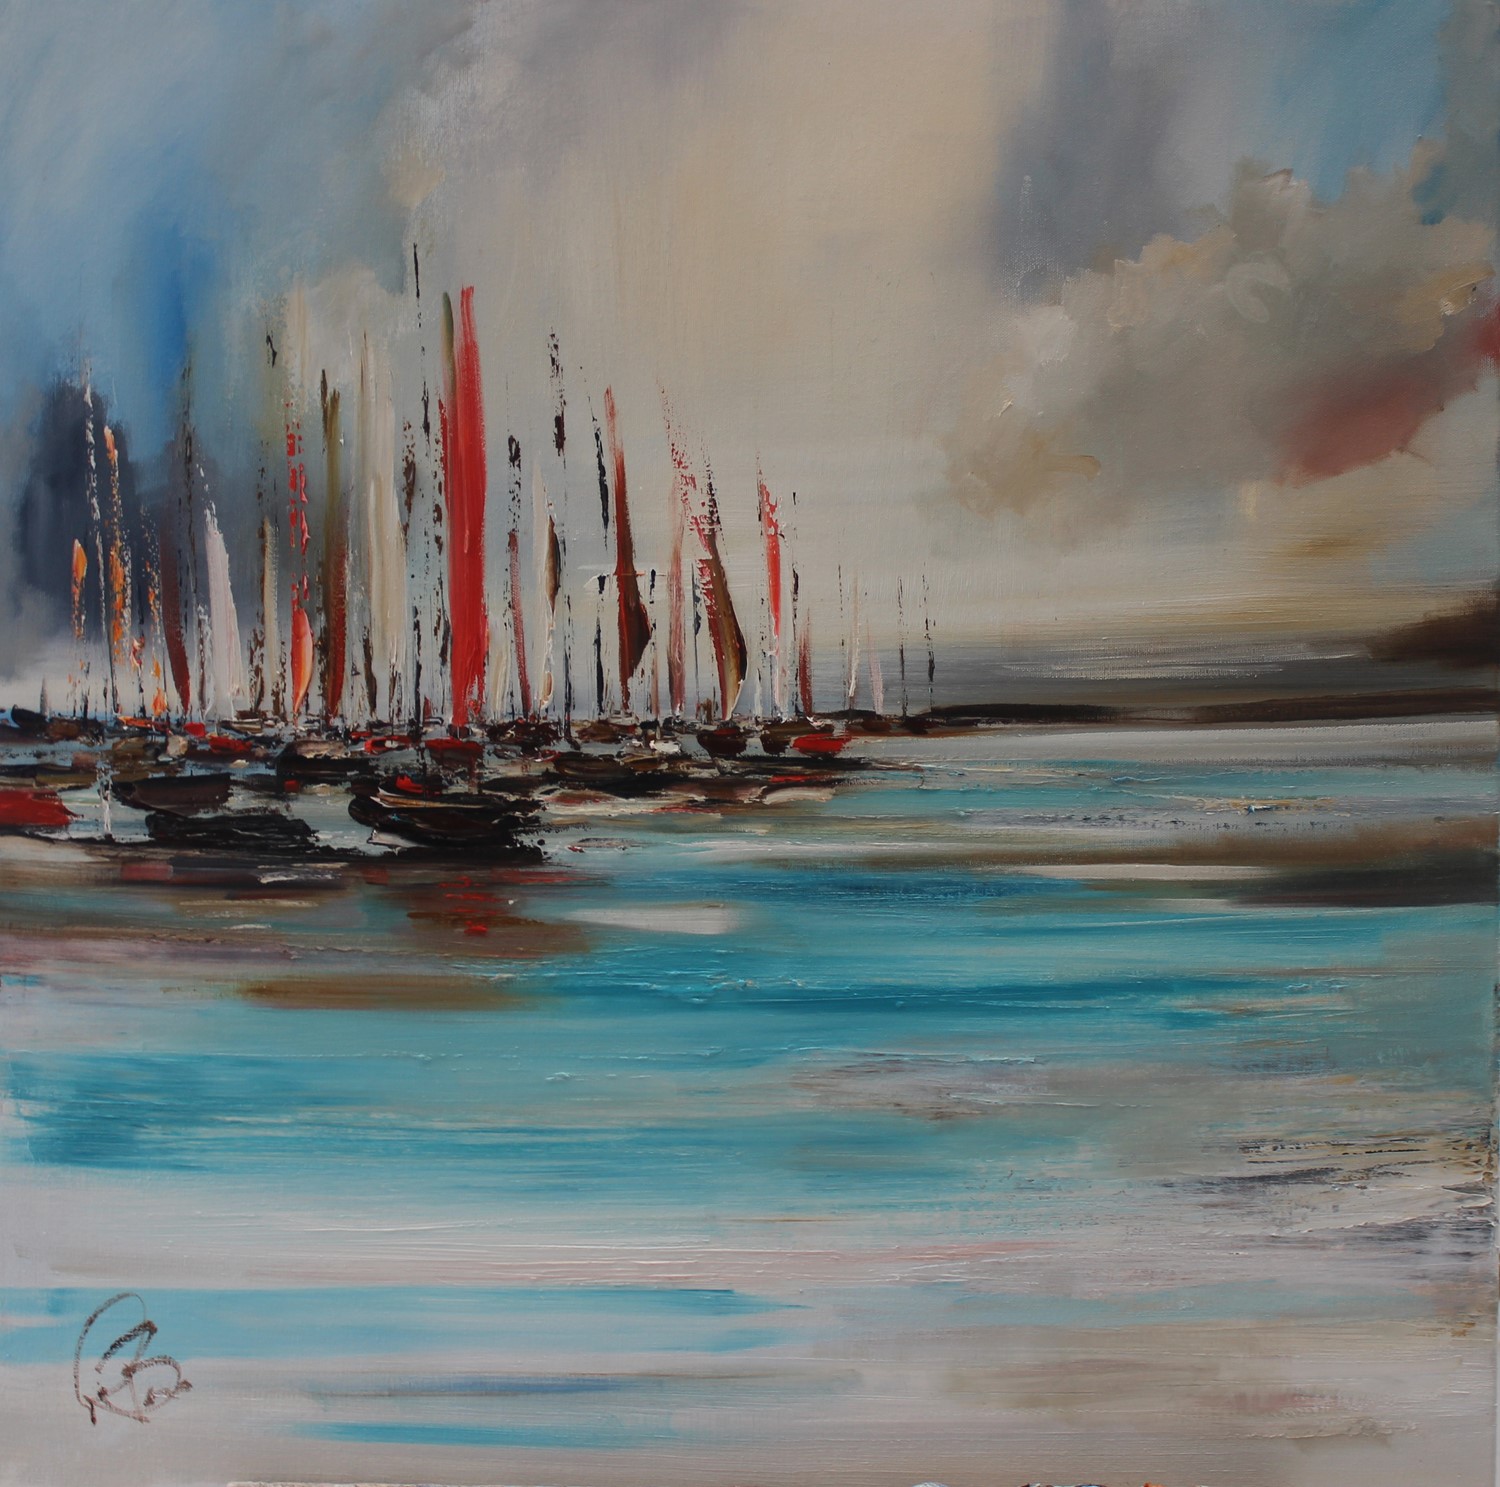 'Sails Out' by artist Rosanne Barr